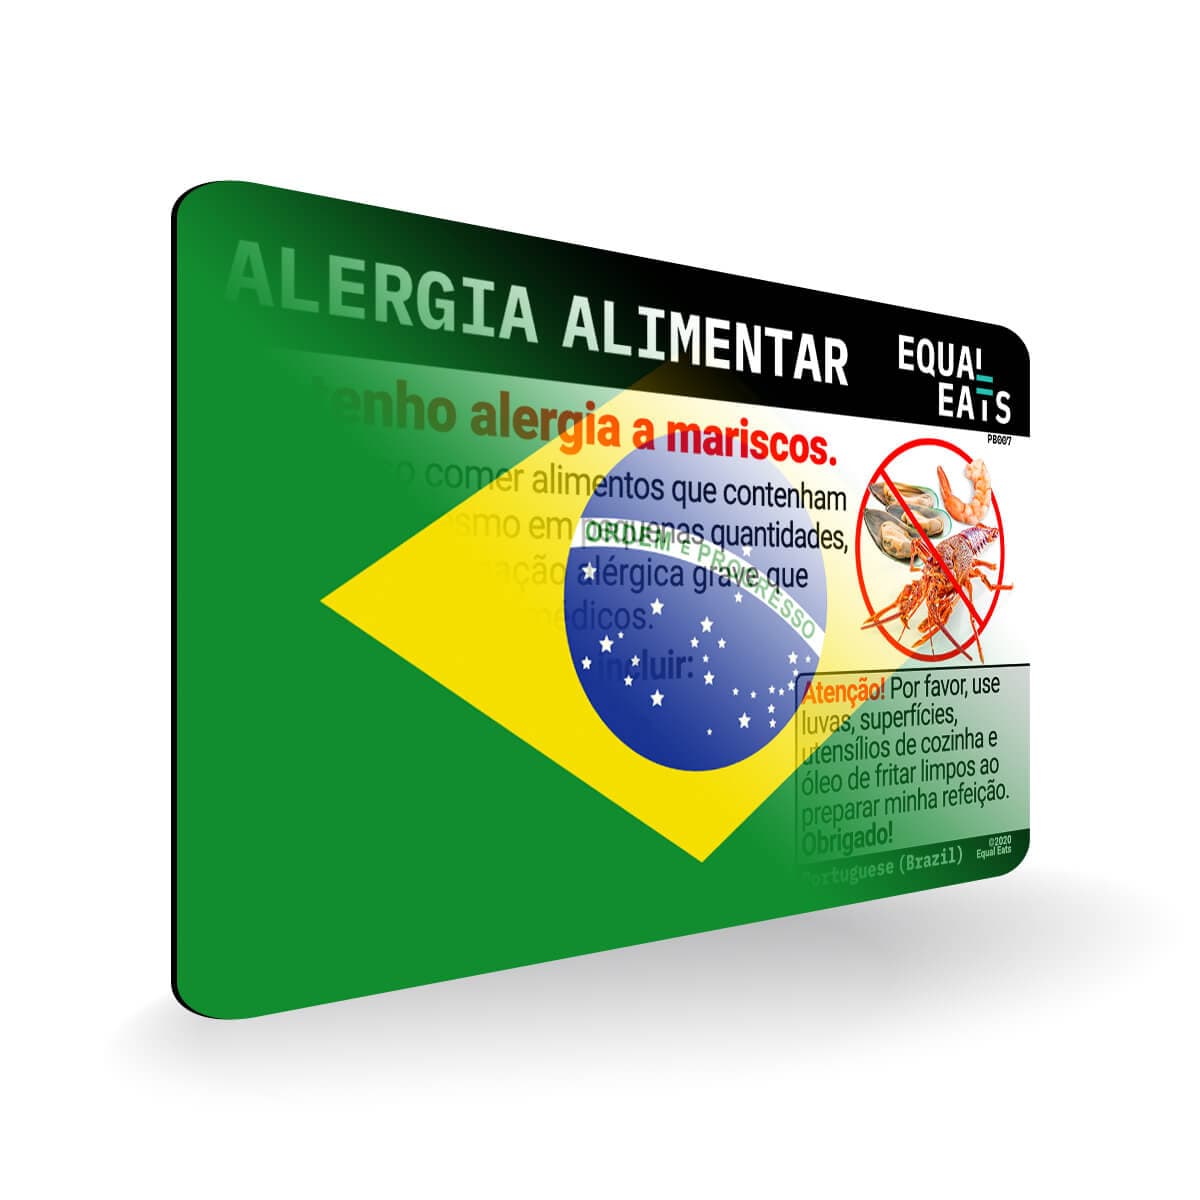 Shellfish Allergy in Portuguese. Shellfish Allergy Card for Brazil